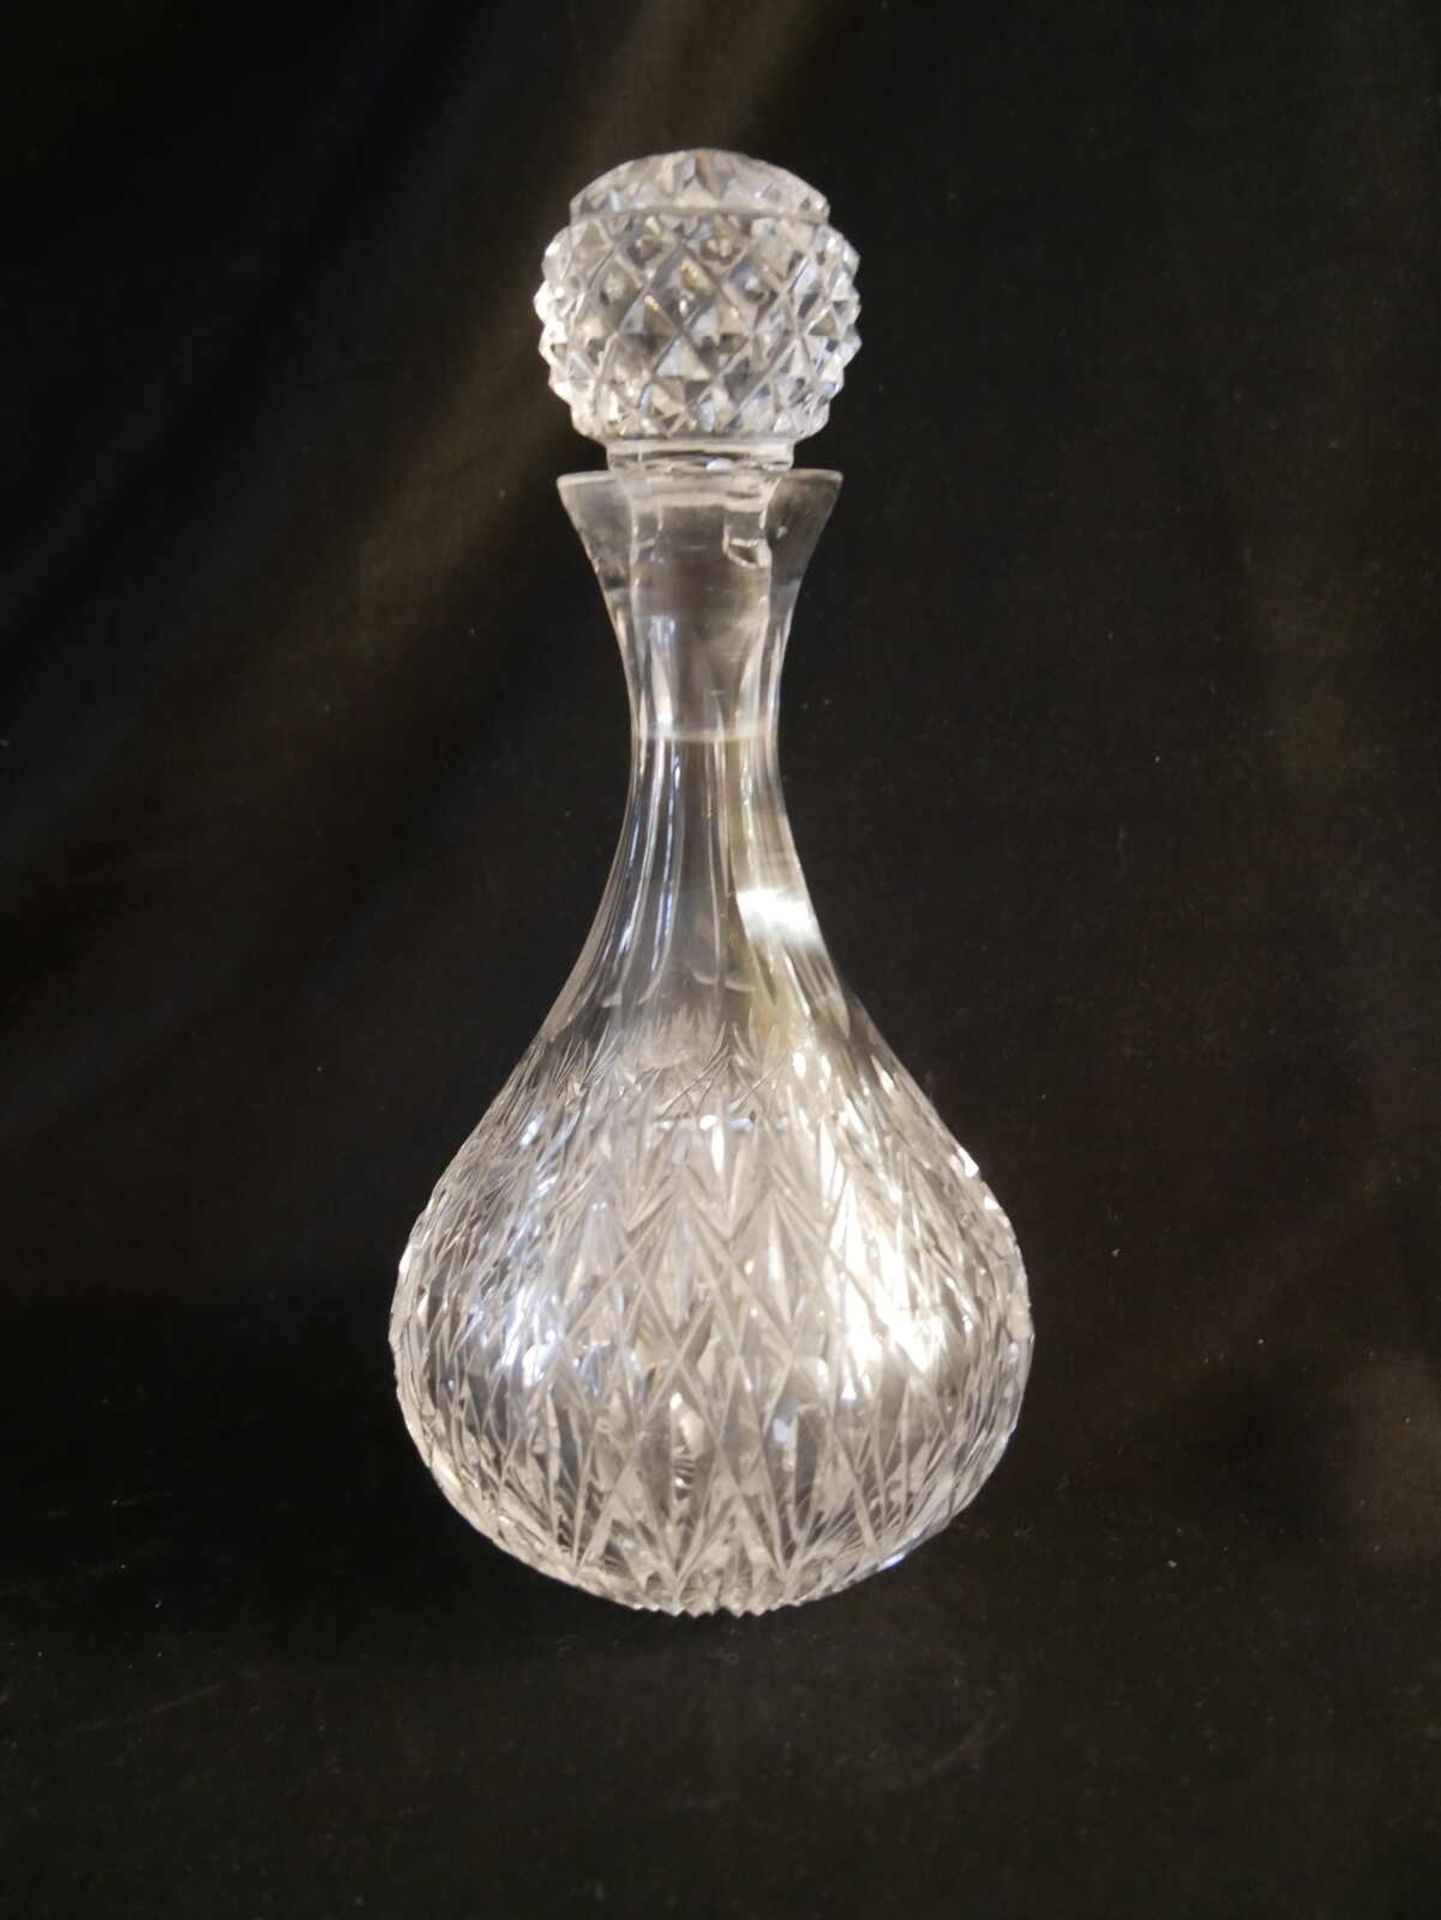 2 Bleikristall Karaffen mit Stöpsel, Höhe bis 26 cm - Image 2 of 2